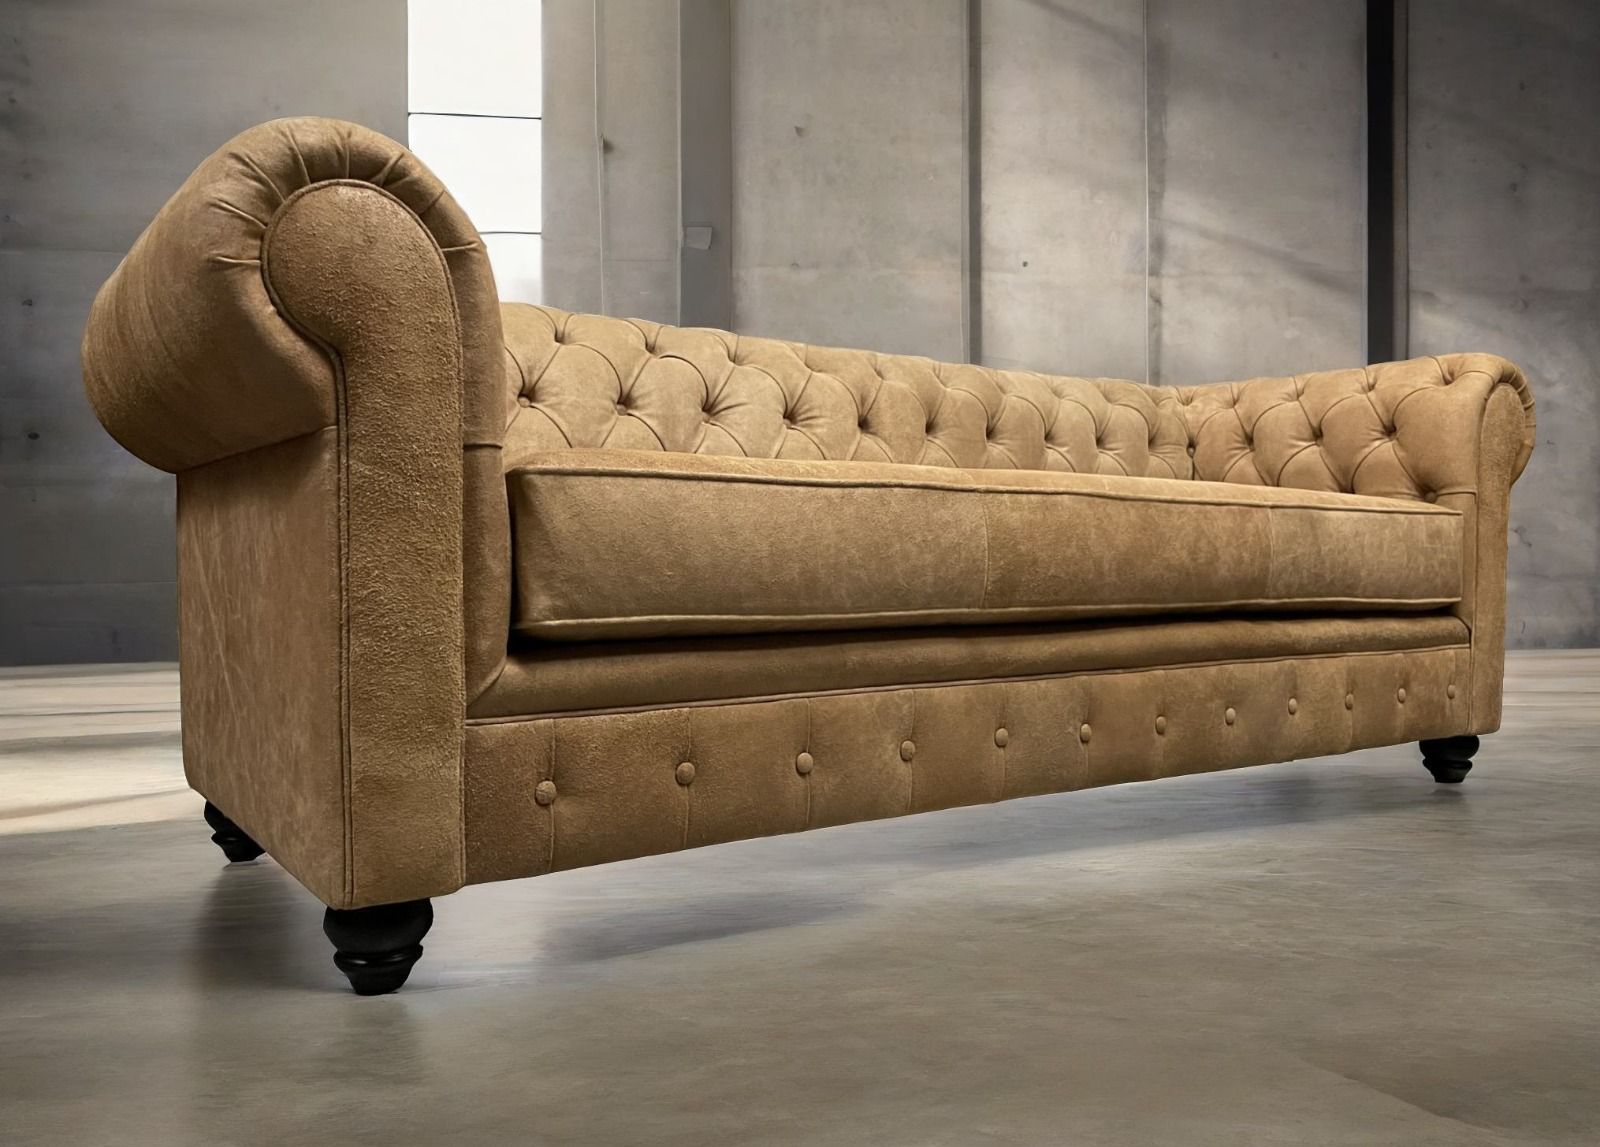 Sofa de Cuero – Chesterfield Color Distroi Oak, 240 cm de frente, Cojín único asiento, tres costuras, Respaldo Recto Clásico, Cuero 100% Natural Uruguayo 33